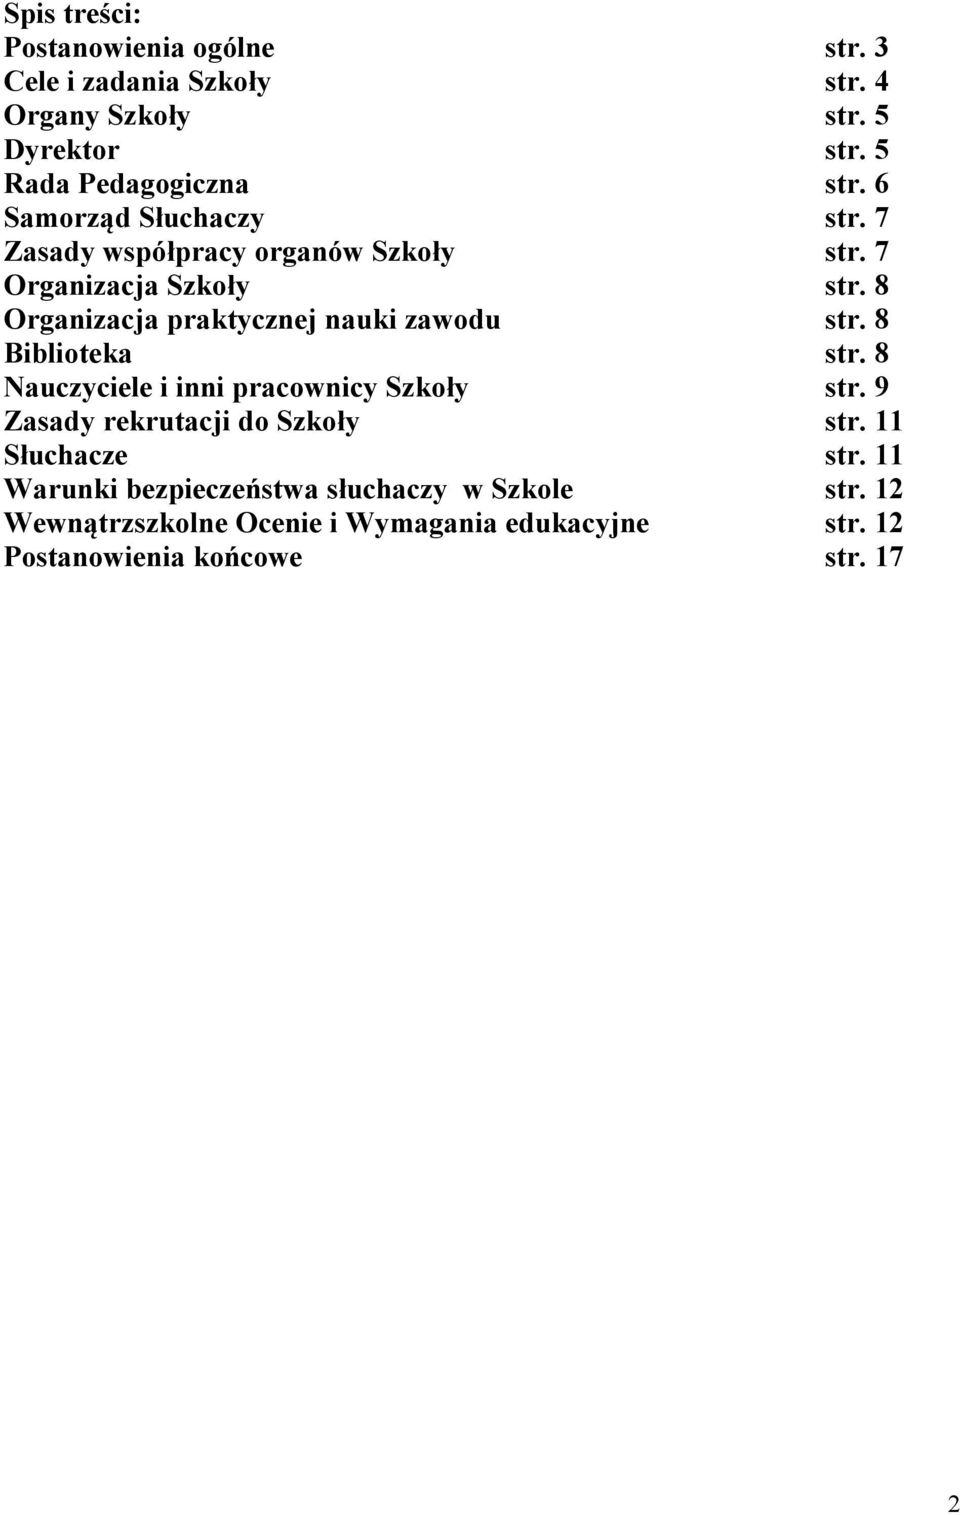 8 Organizacja praktycznej nauki zawodu str. 8 Biblioteka str. 8 Nauczyciele i inni pracownicy Szkoły str.